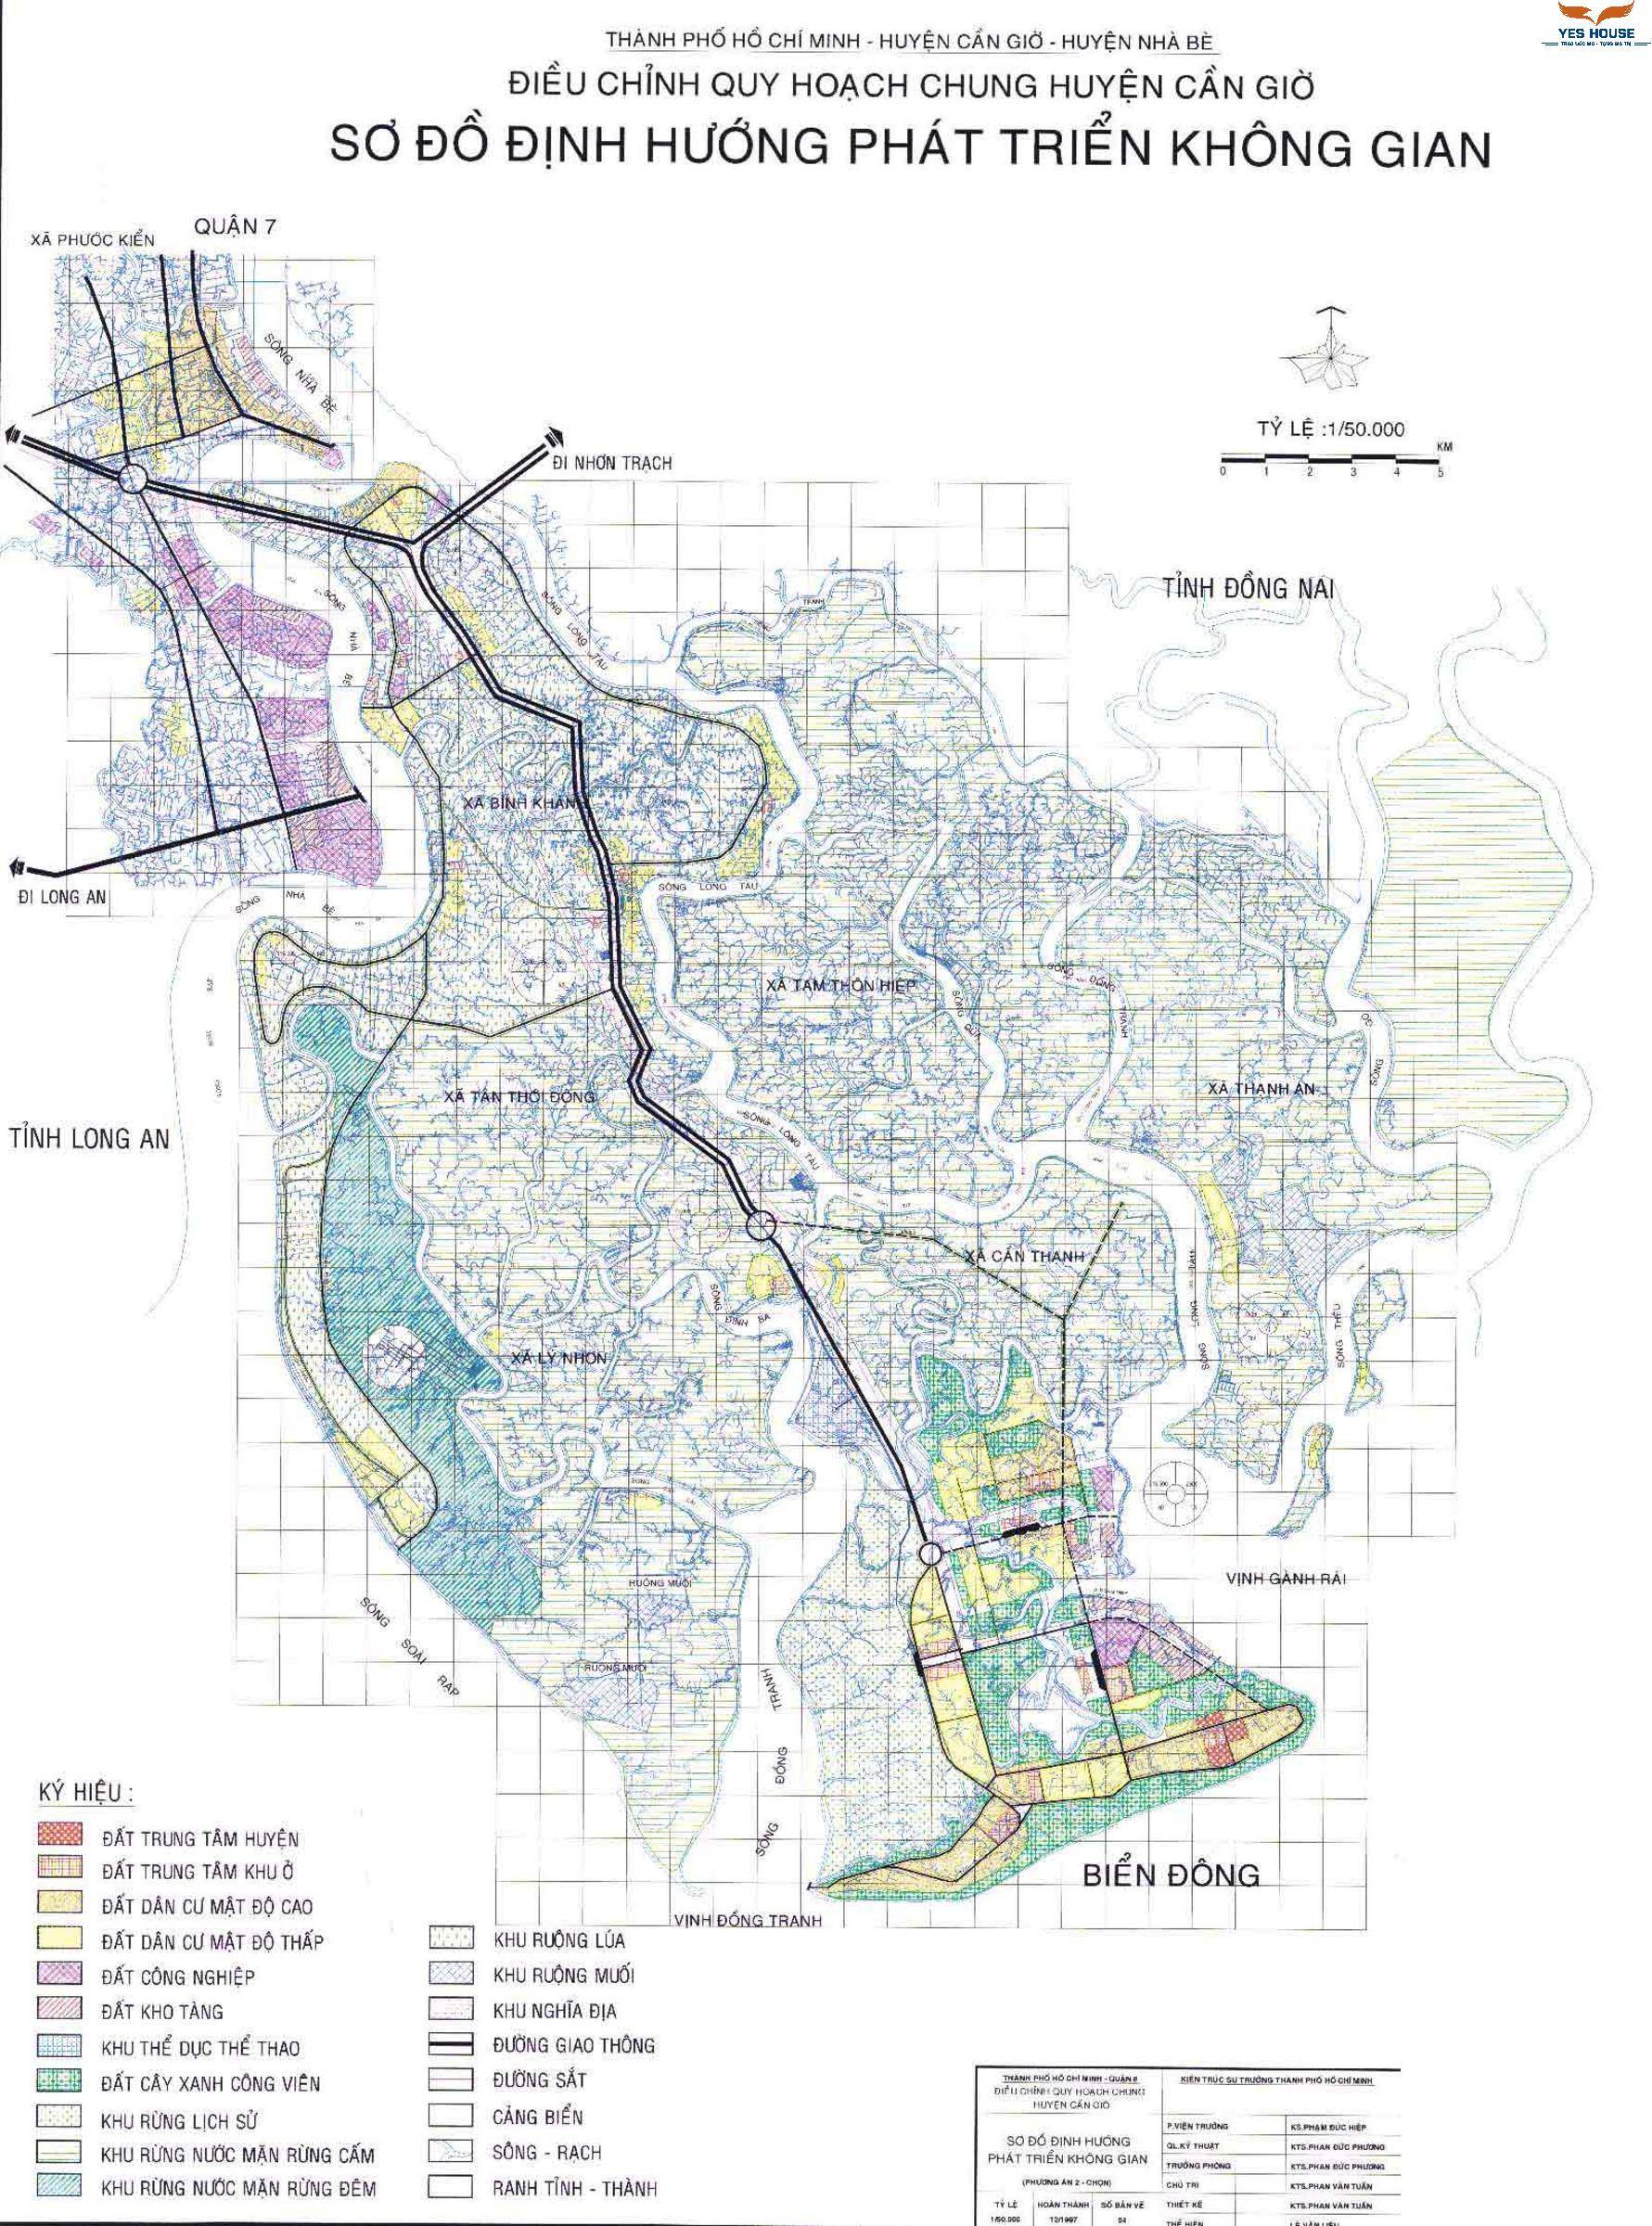 Sơ đồ định hướng phát triển không gian huyện Cần Giờ giai đoạn 2021 - 2030 - Quy hoạch huyện Cần Giờ - Yeshouse